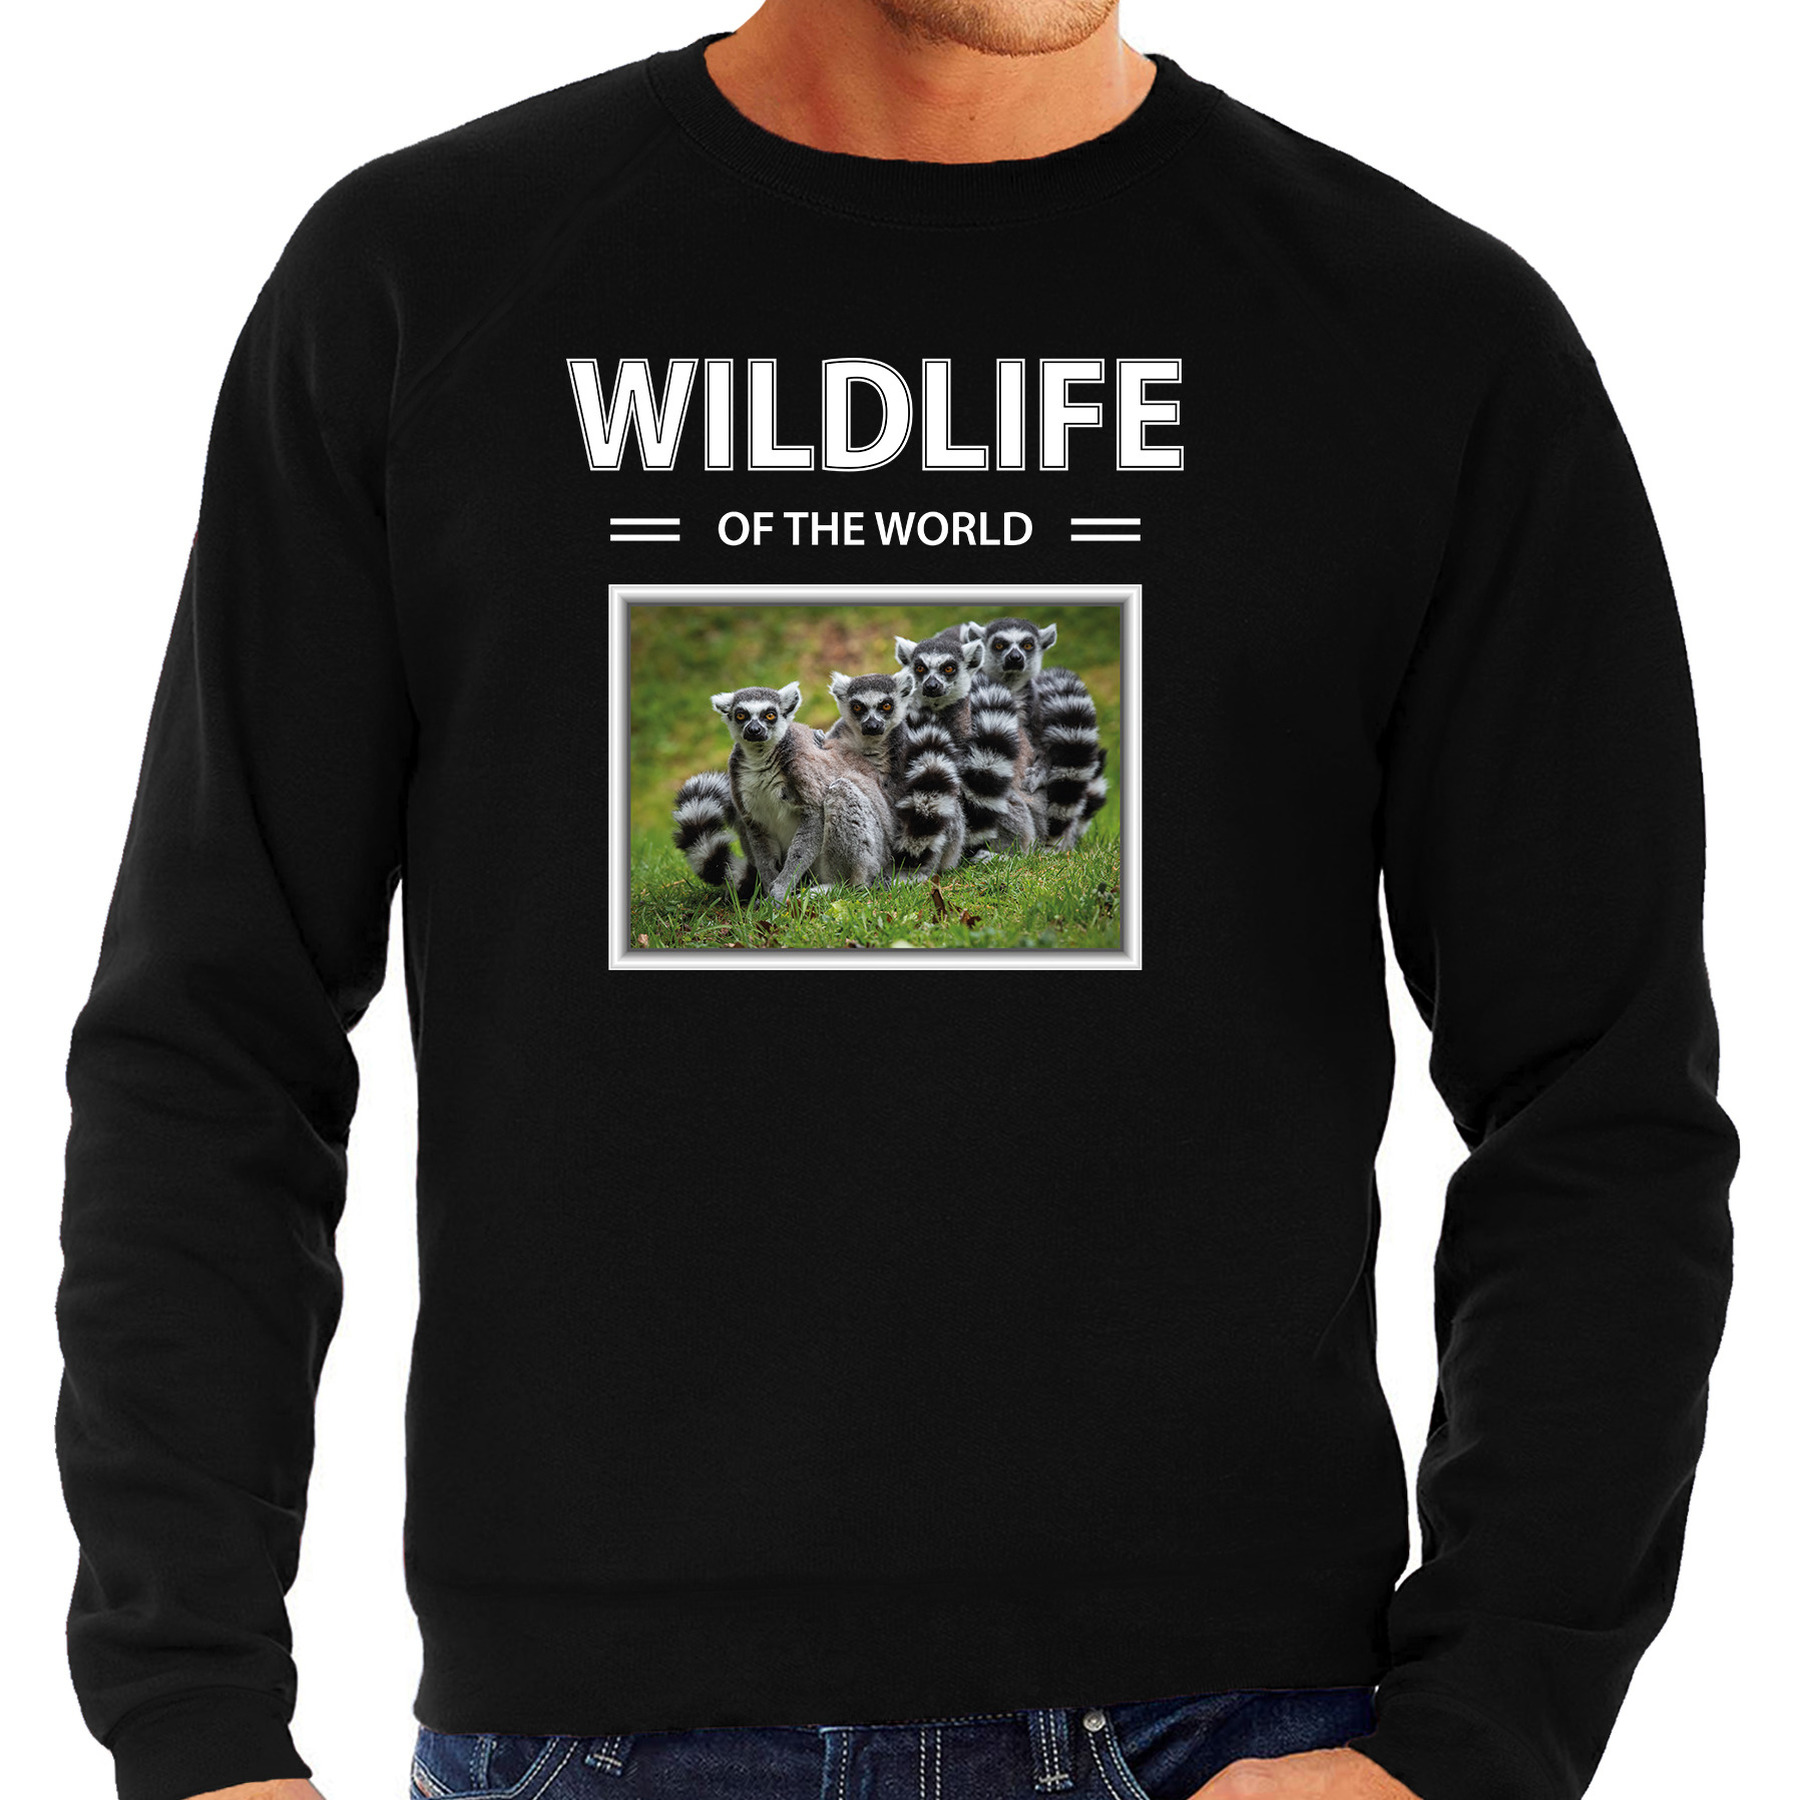 Ringstaart maki sweater / trui met dieren foto wildlife of the world zwart voor heren